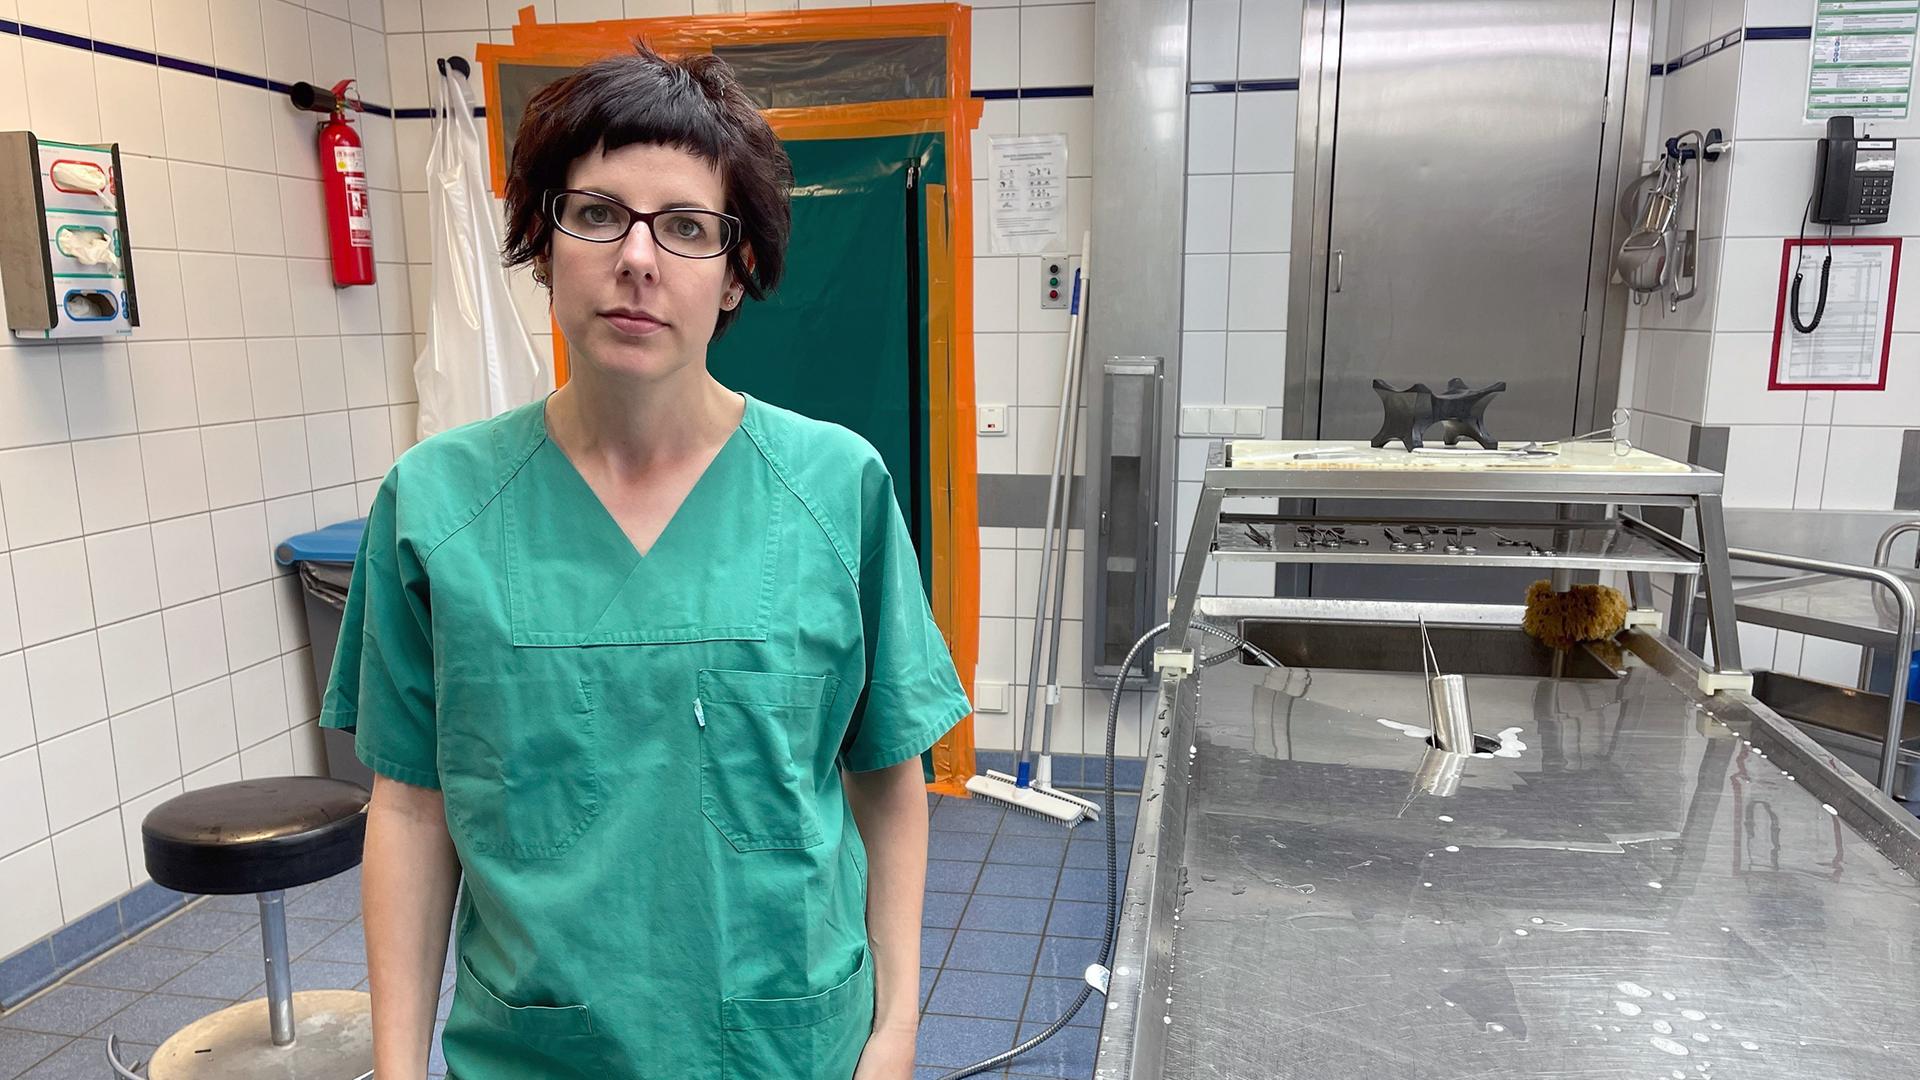 Die Rechtsmedizinerin Sarah Kölzer steht in einem Gerichtsmedizinischen Institut, sie trägt einen grünen Operationskittel.